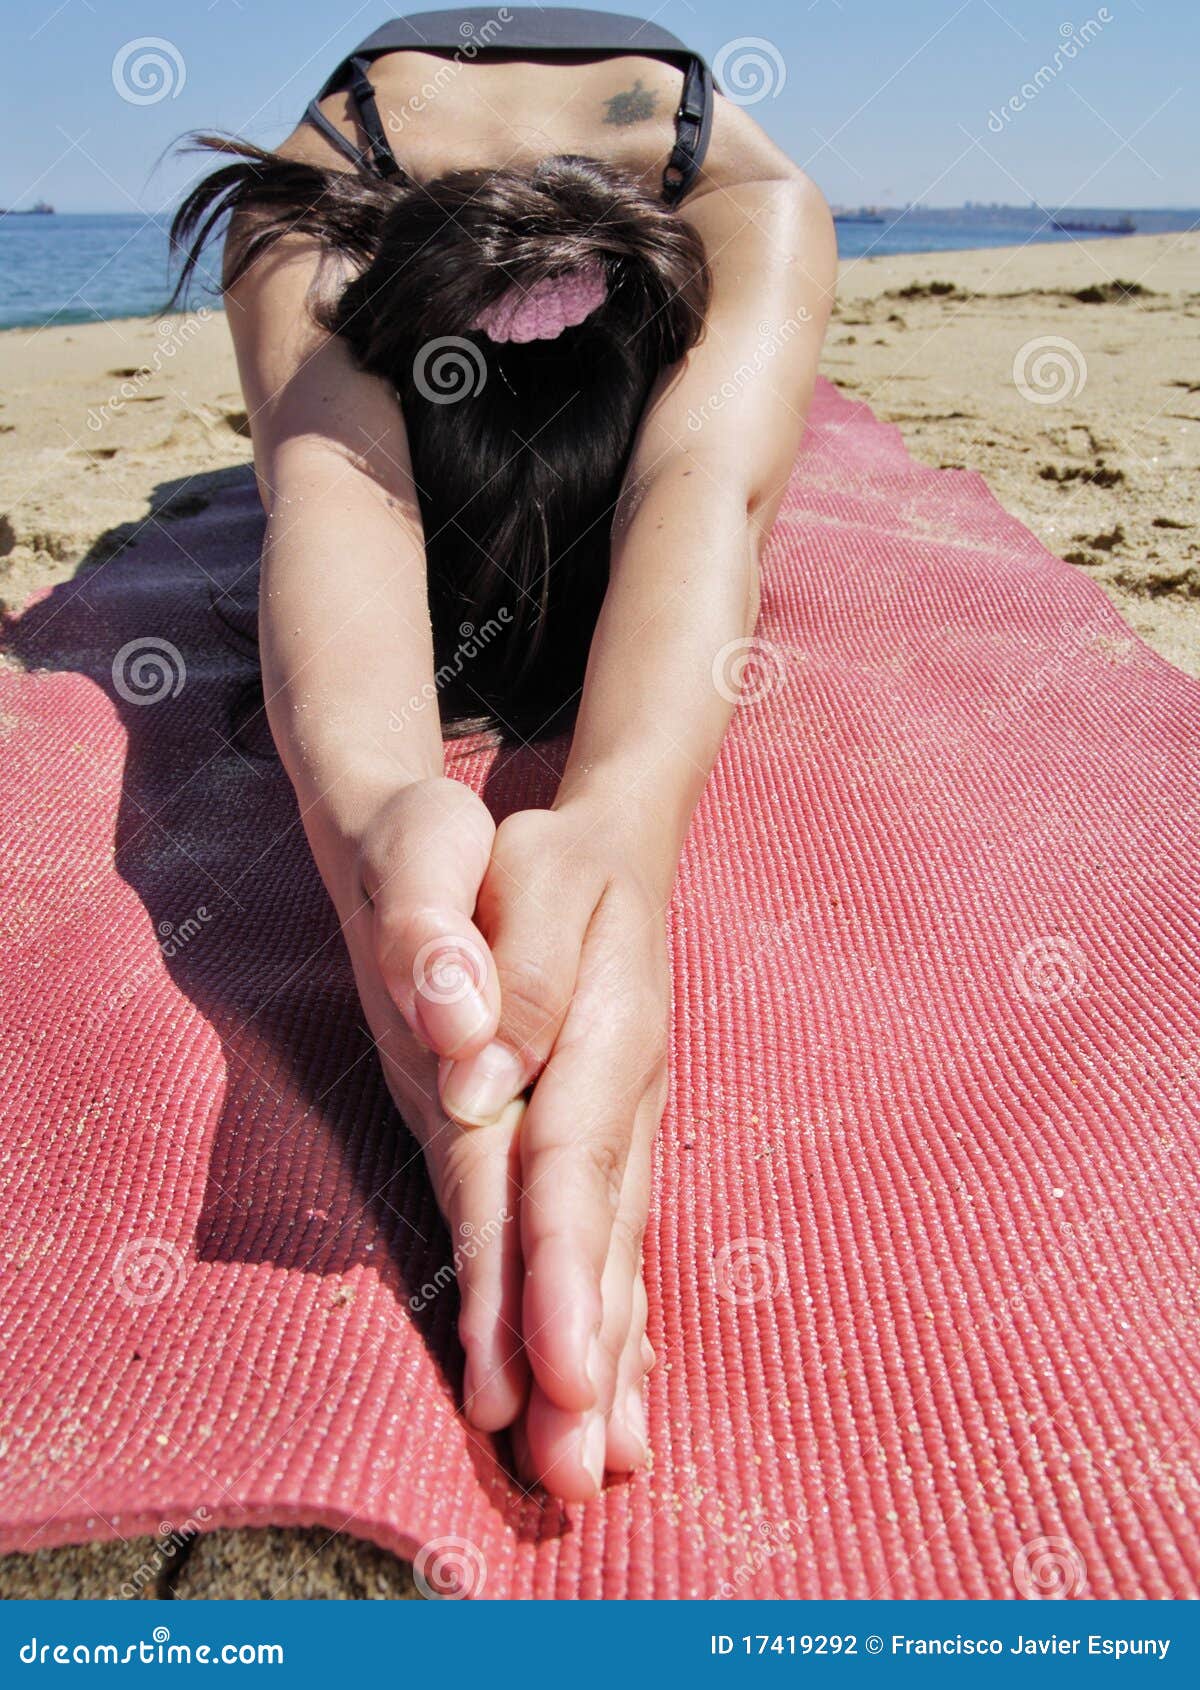 bikram yoga ardha kurmasana pose at beach